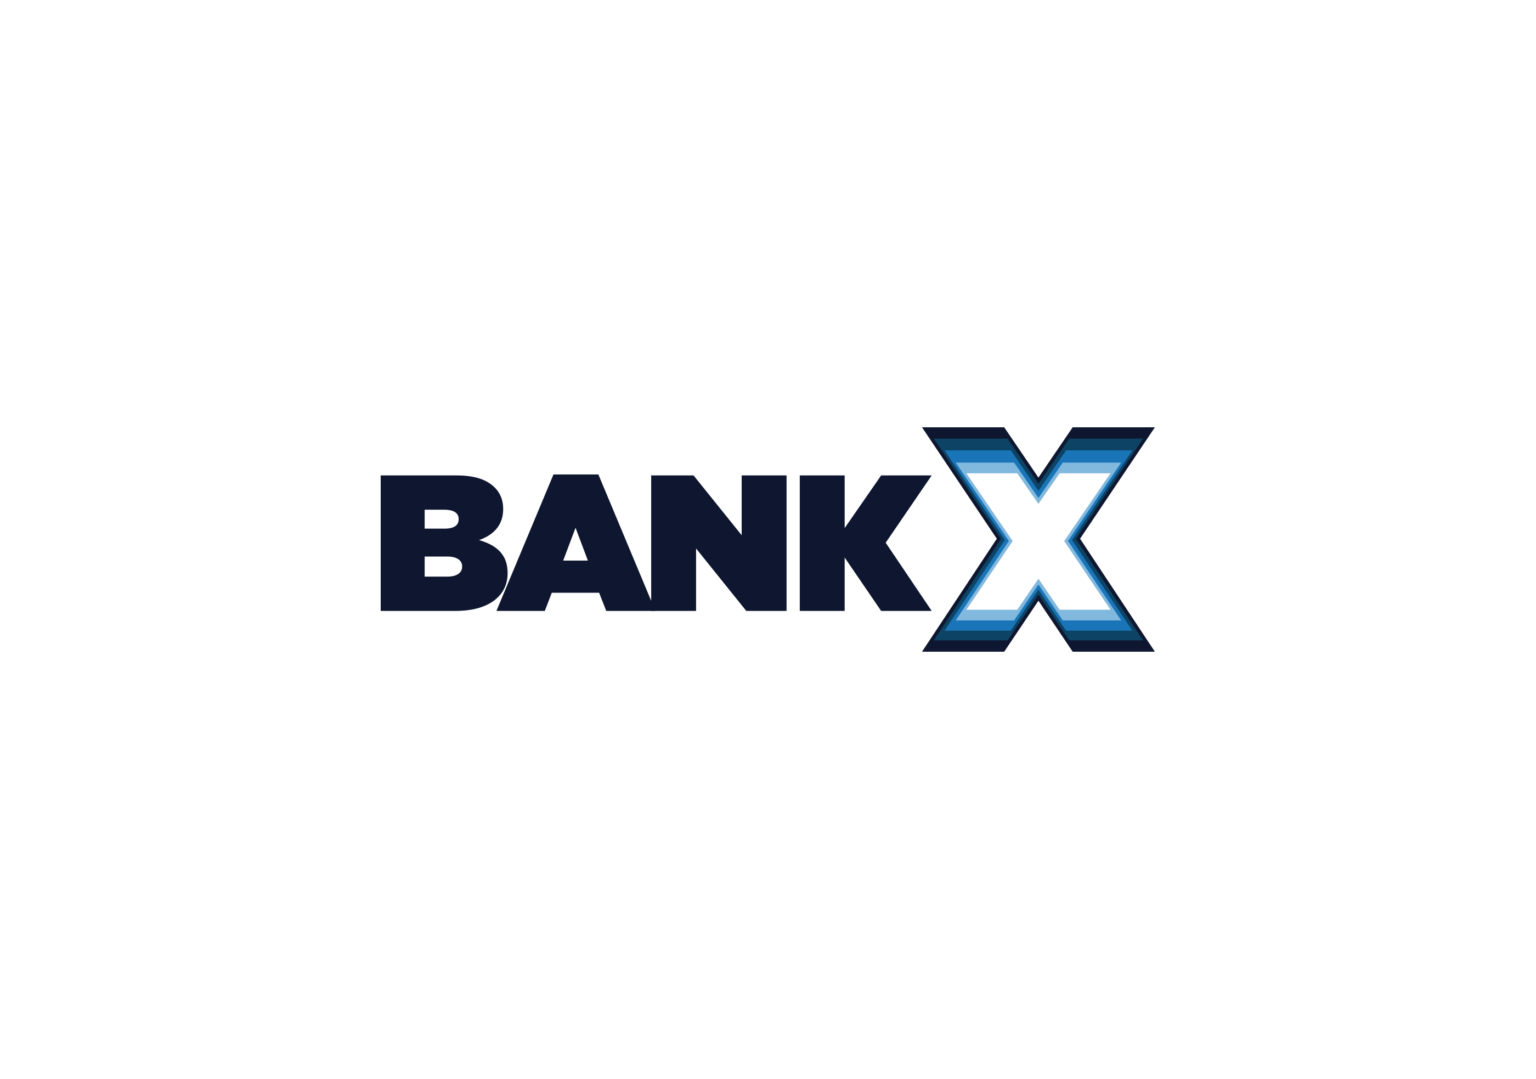 Bankx Brand Identity Logo